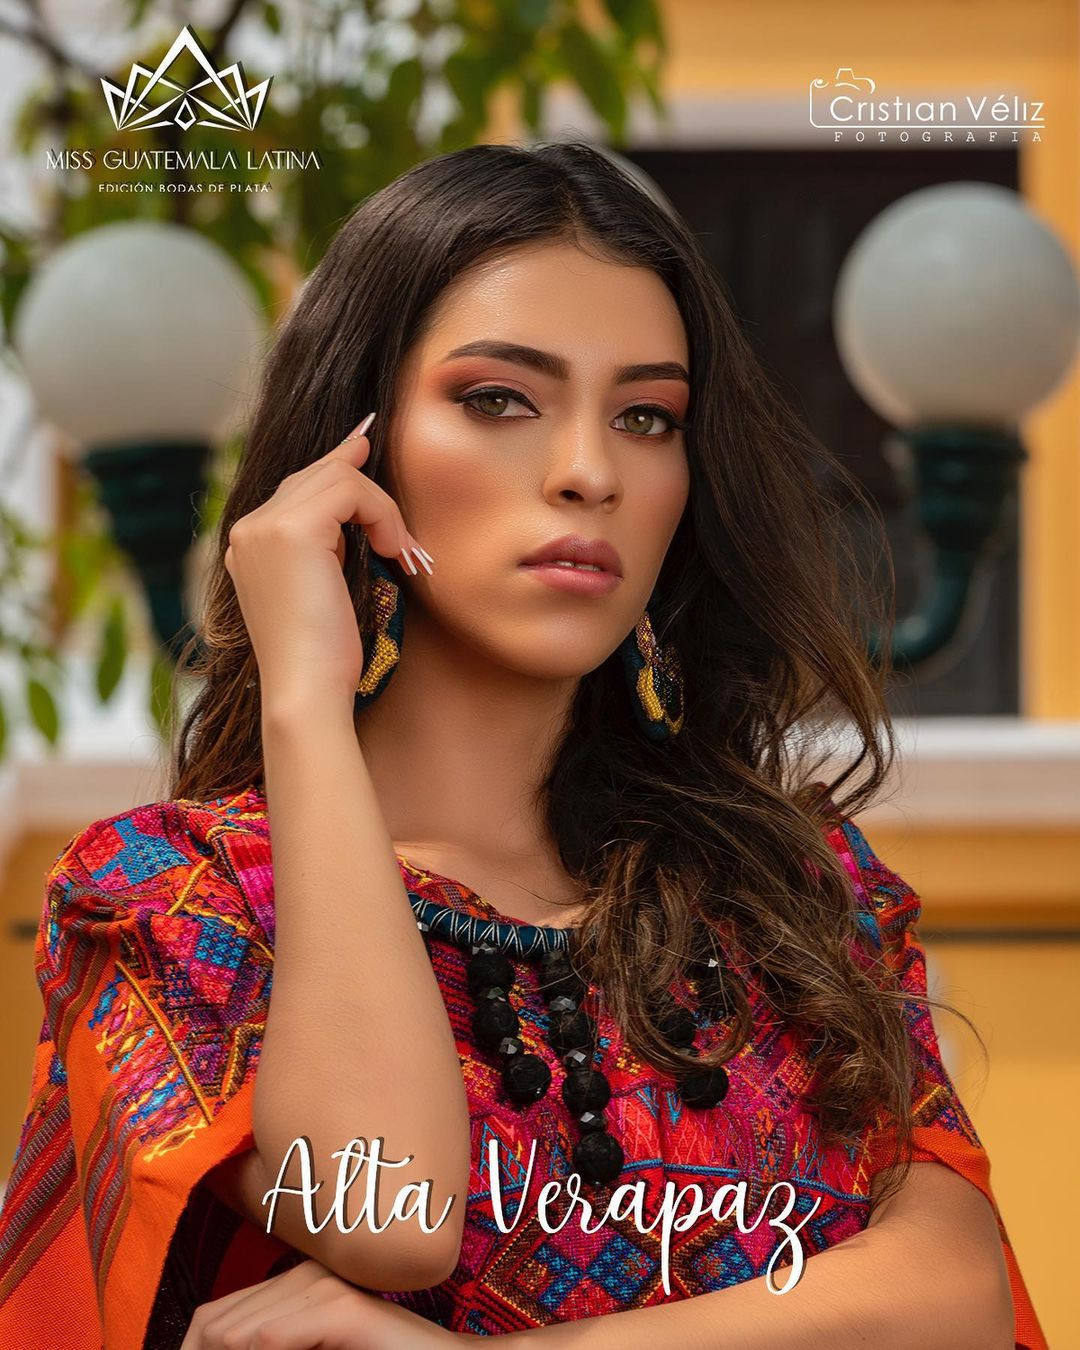 Latina - candidatas a miss guatemala latina 2021. final: 30 de abril. B2Us0x